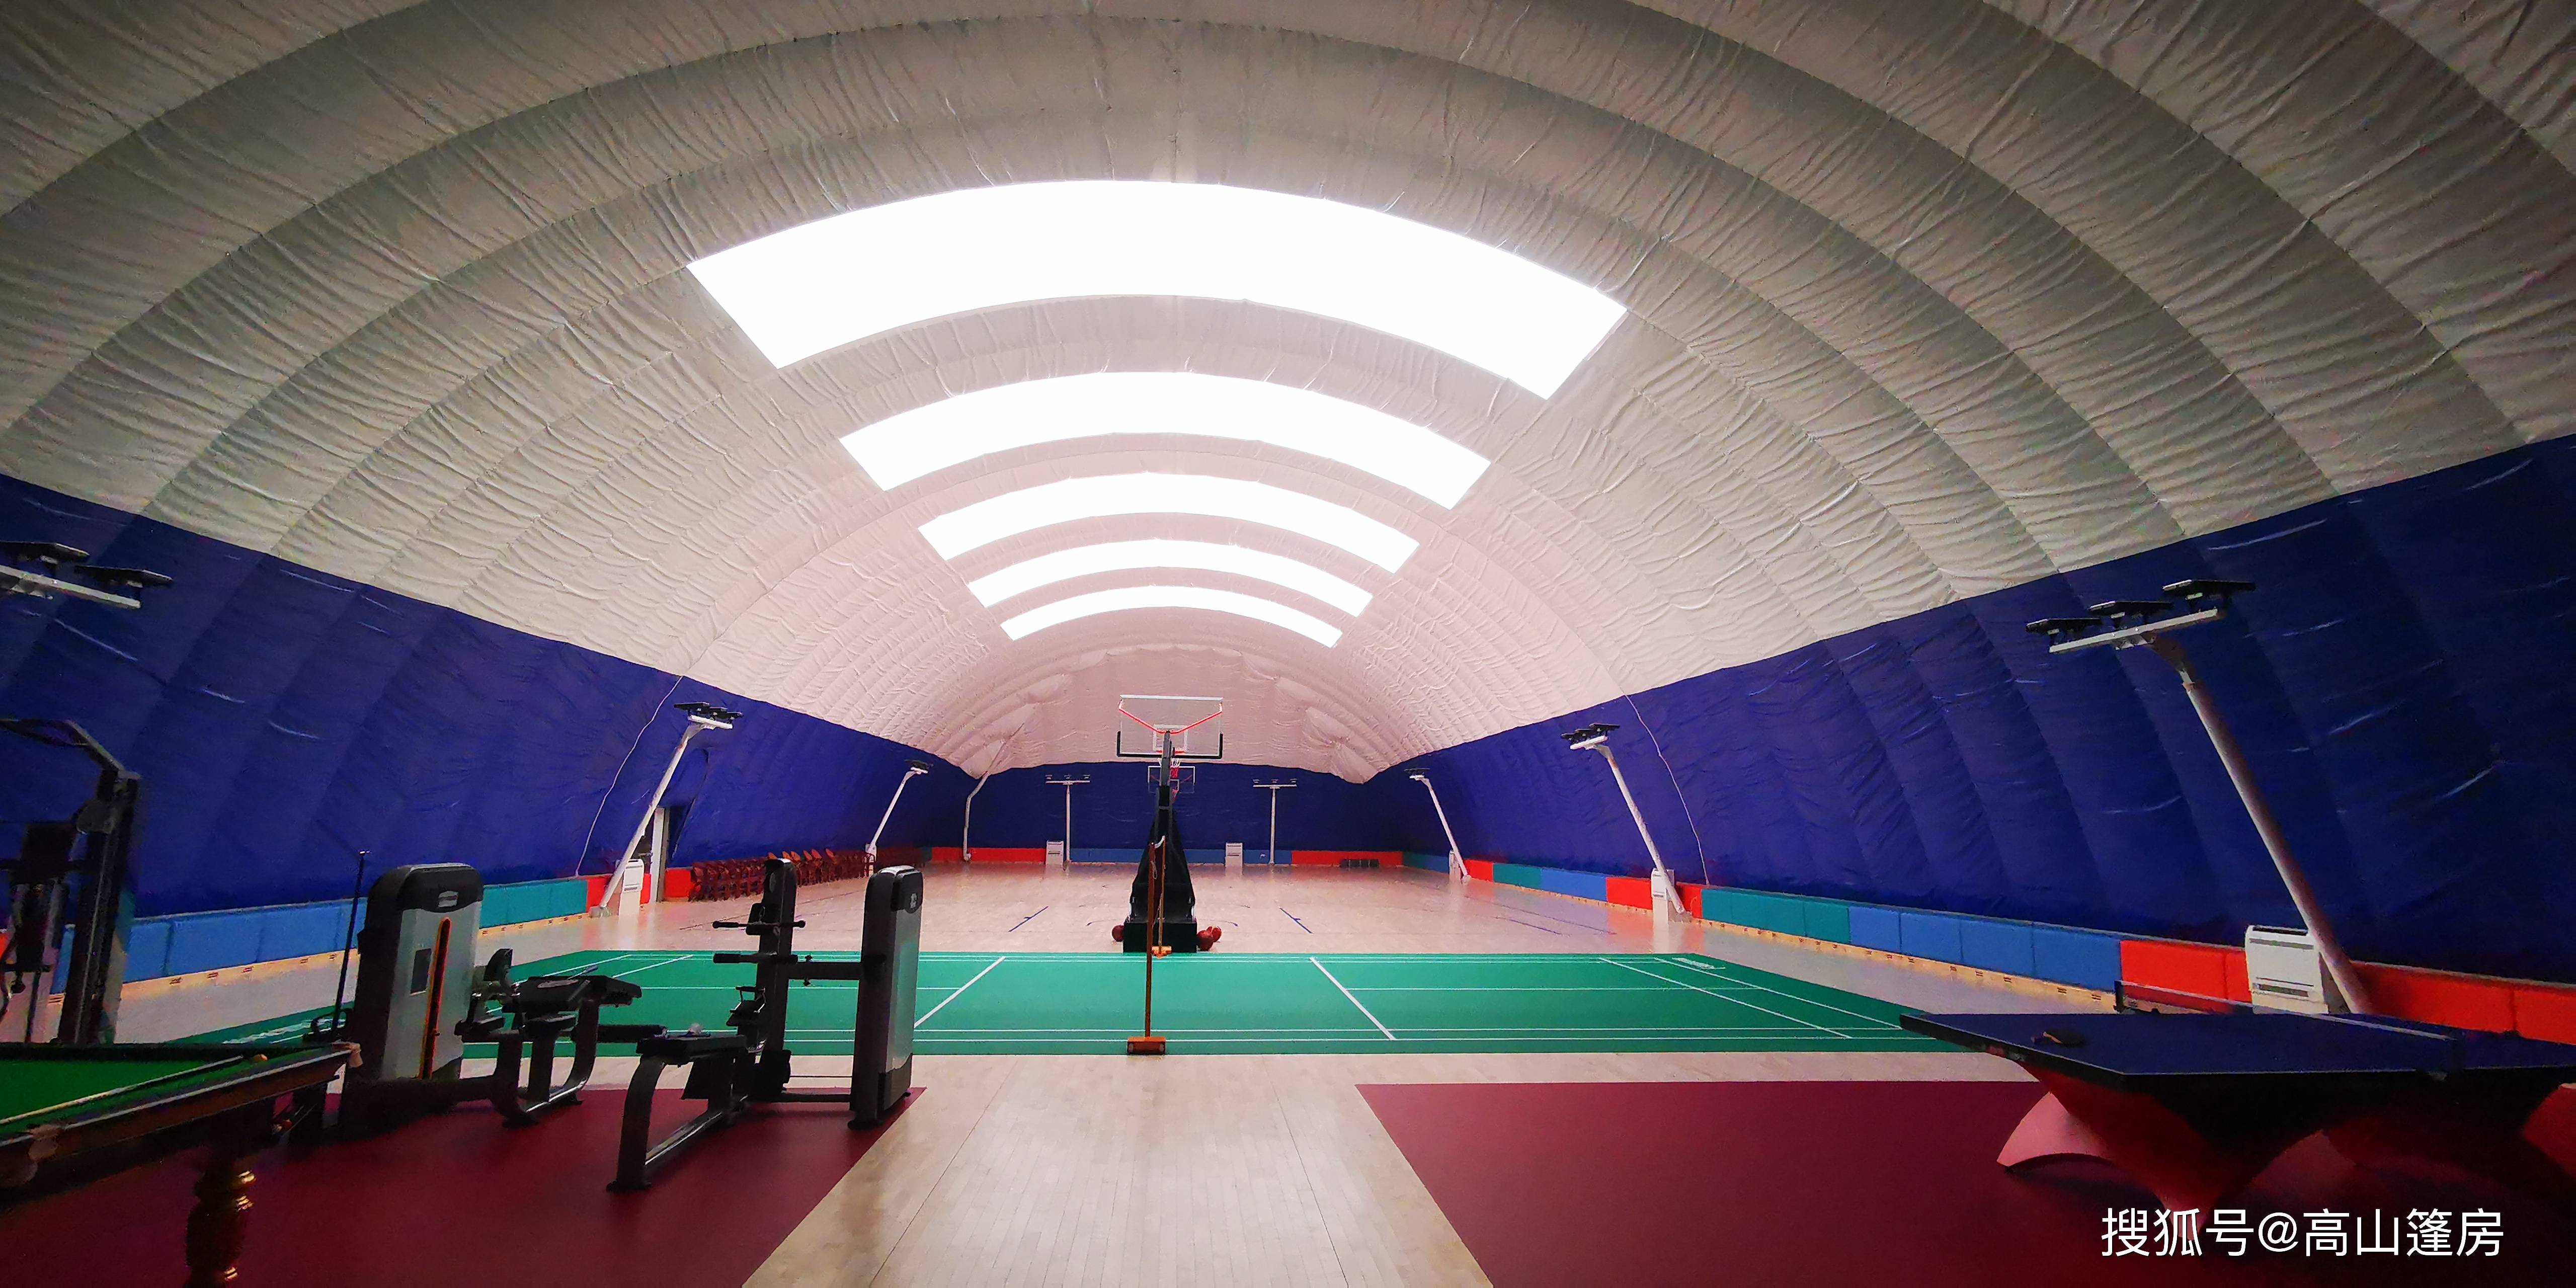 面积4000平方米的气膜网球馆,年能耗费用仅为40万元,约为传统场馆能耗